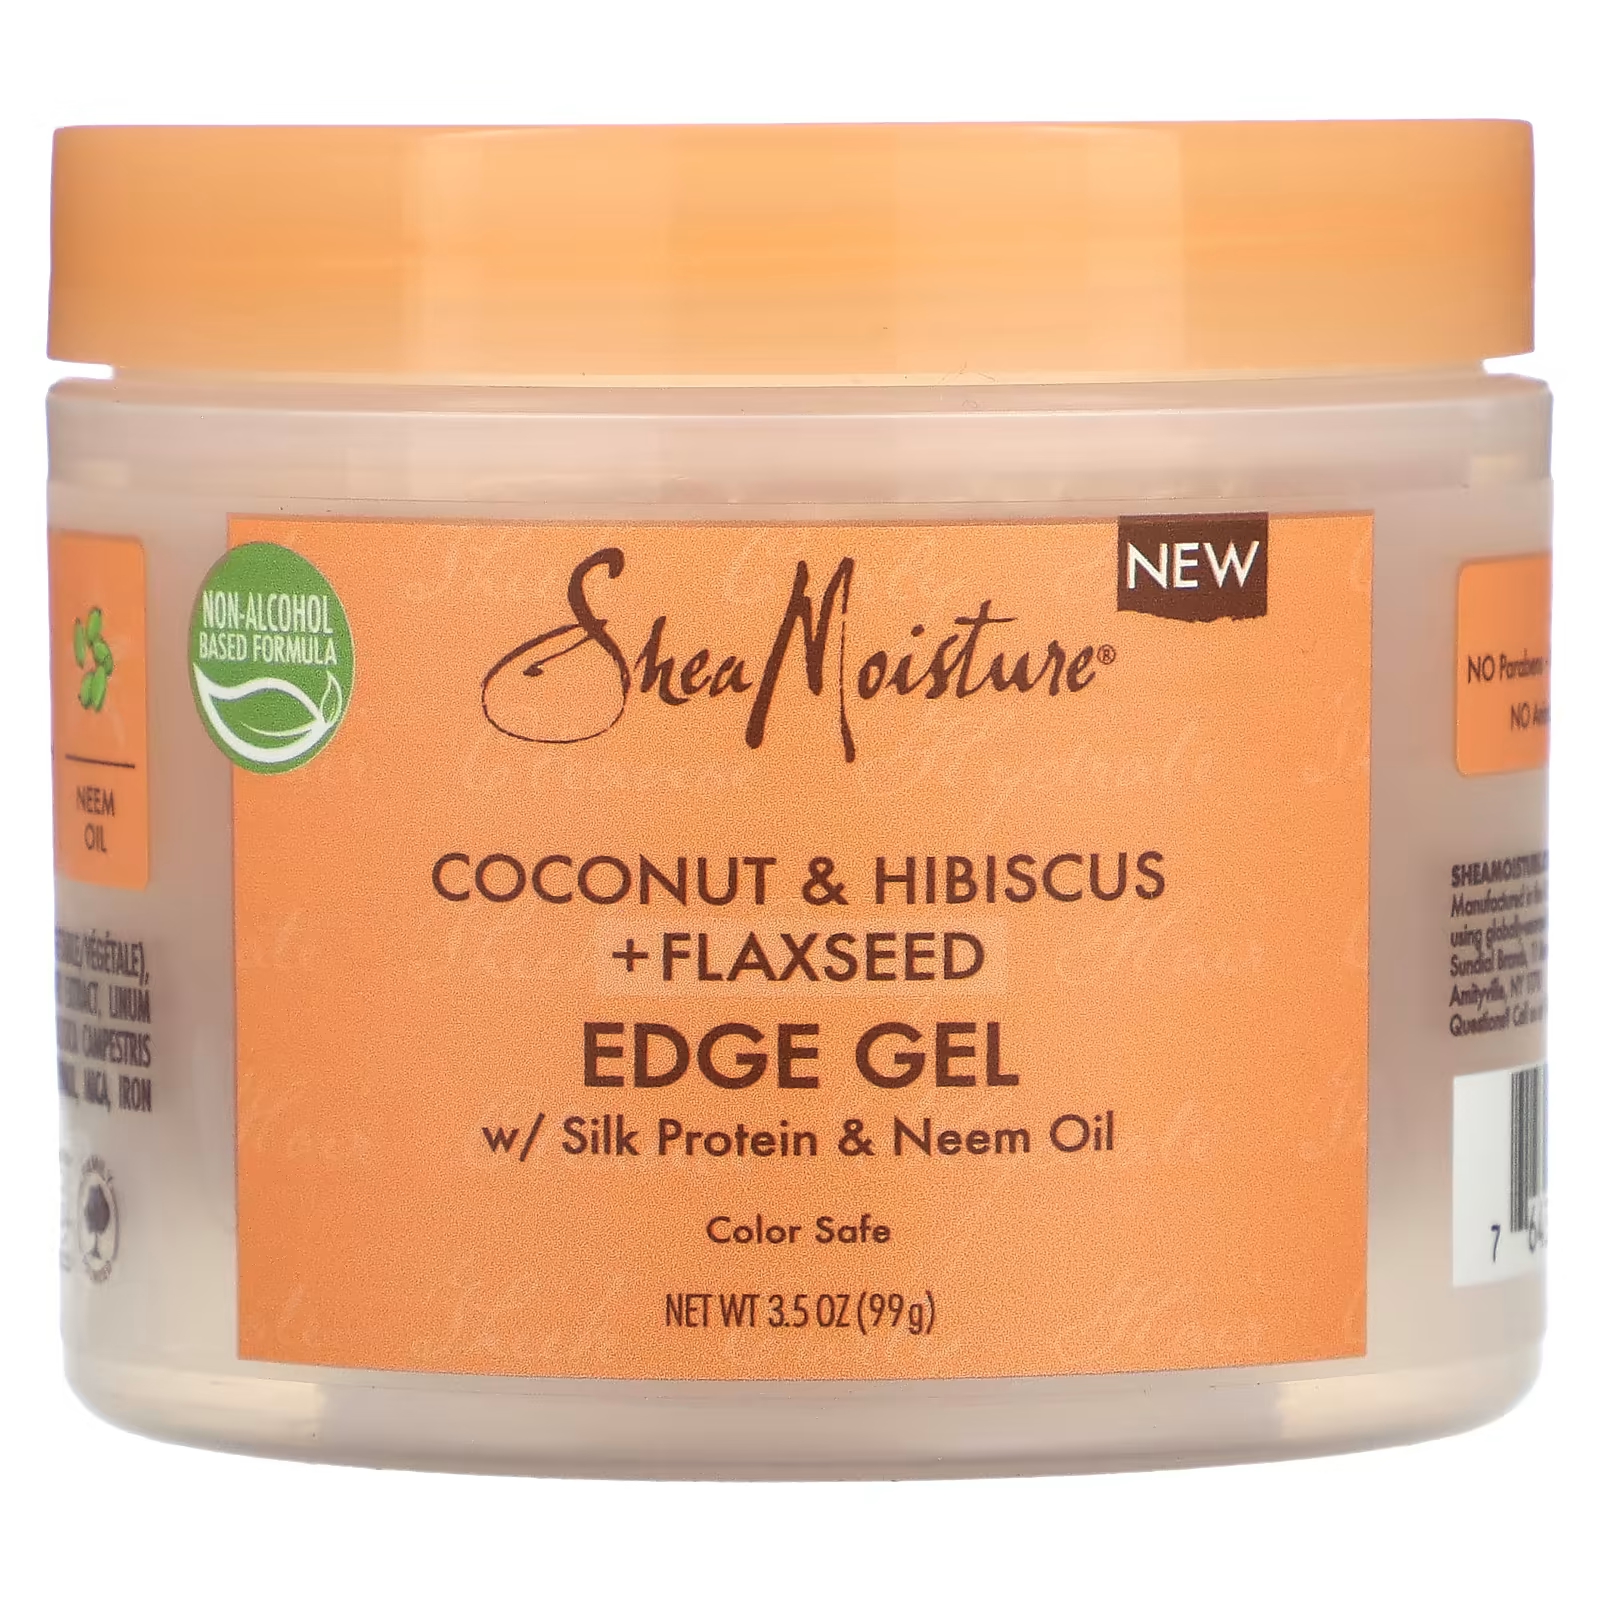 Гель для волос SheaMoisture Edge Gel кокос гибискус и льняное семя, 99г